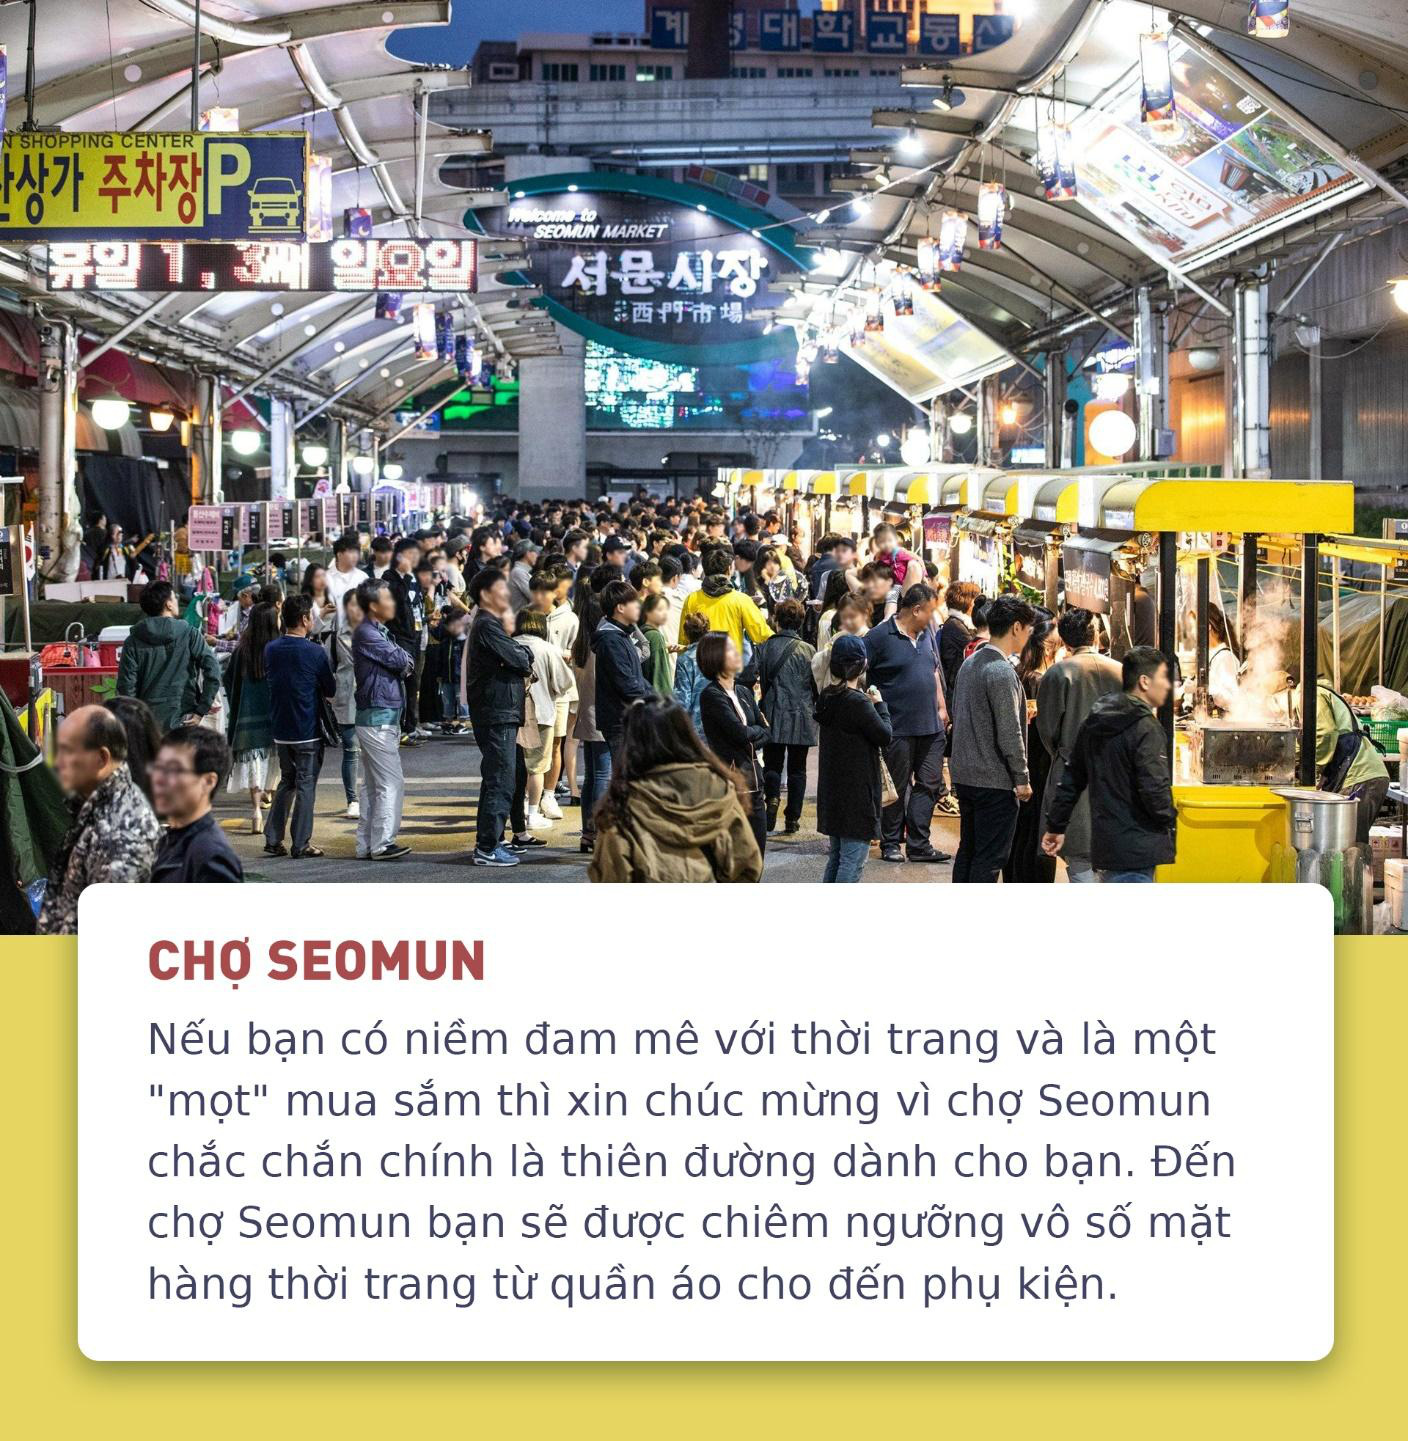 Điểm danh 8 khu chợ truyền thống trứ danh ở Hàn Quốc được du khách săn lùng - Ảnh 7.